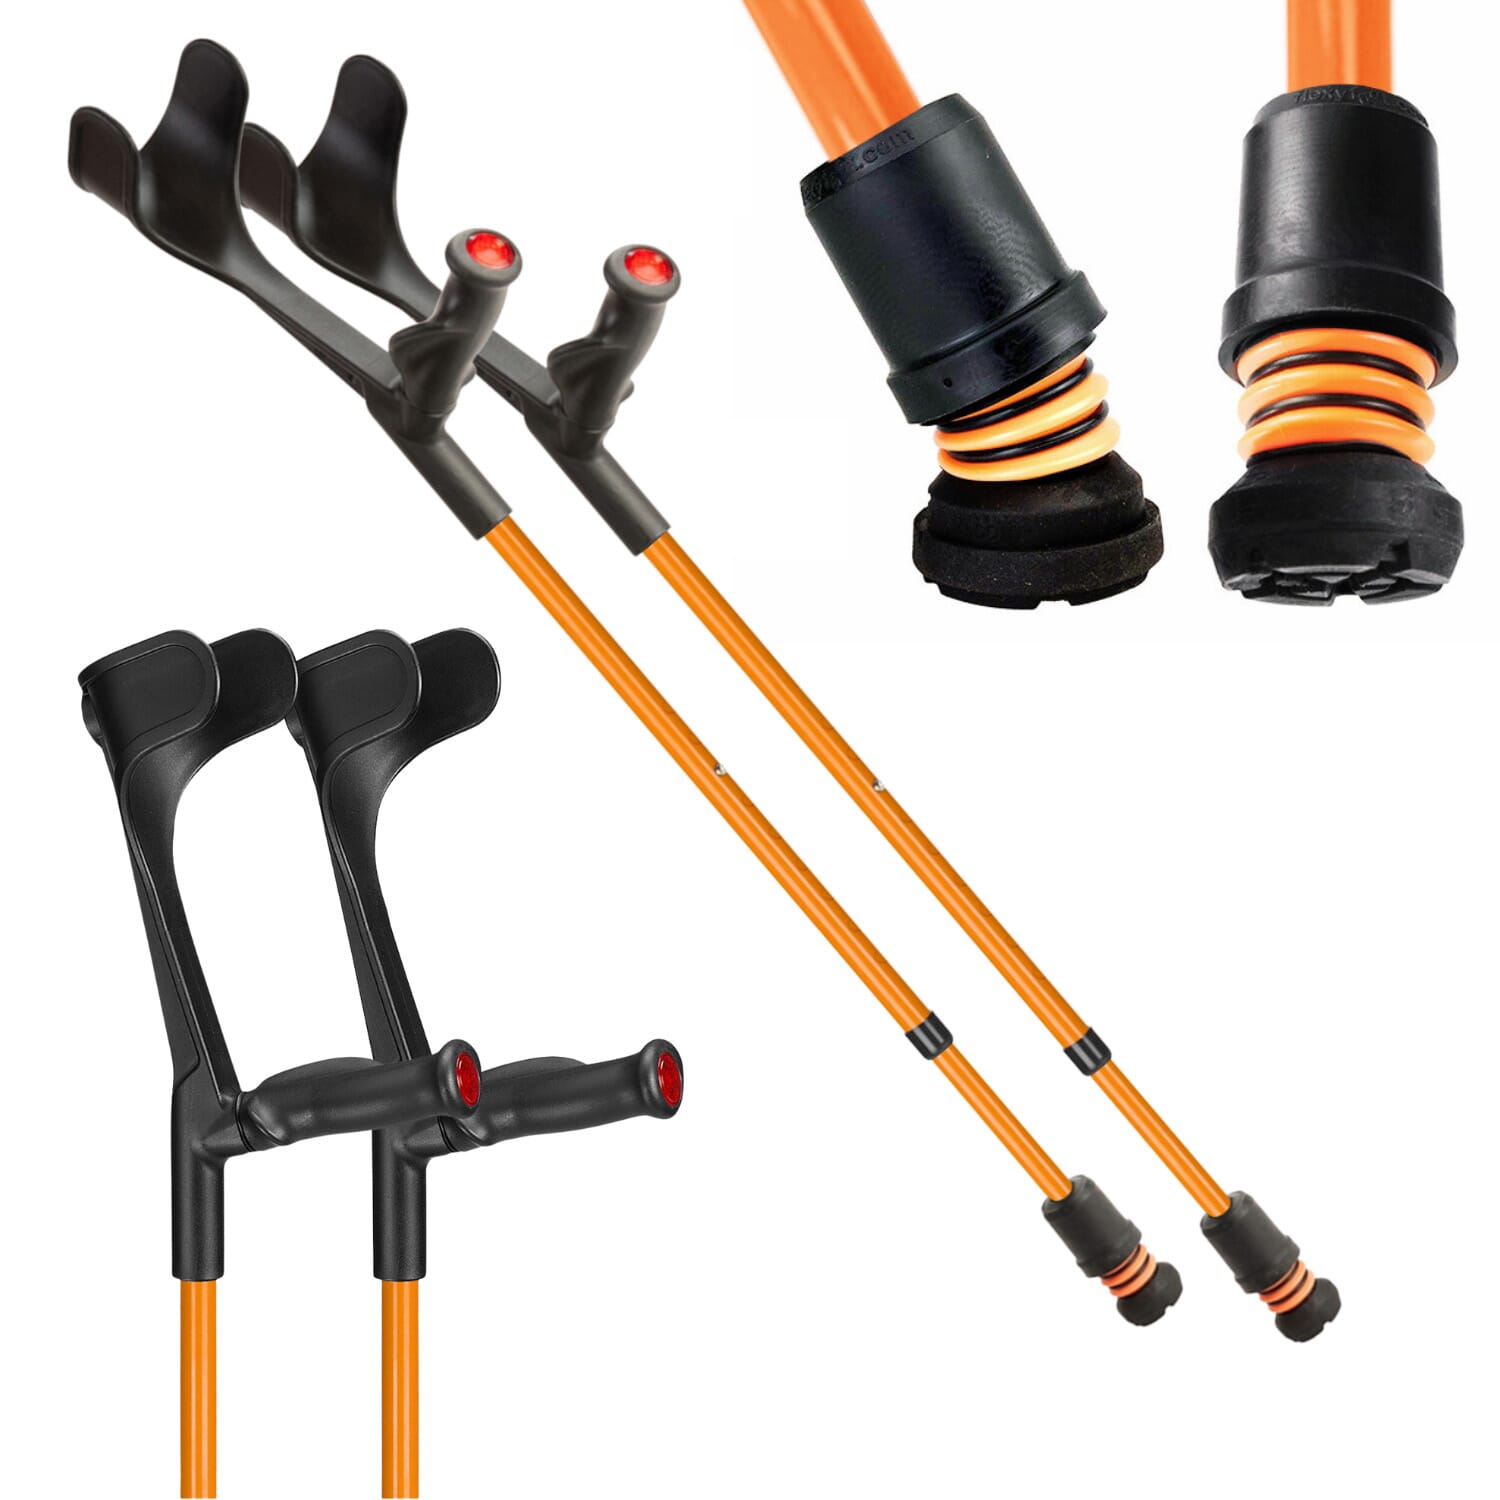 View Flexyfoot Open Cuff Comfort Grip Crutches Orange Pair information